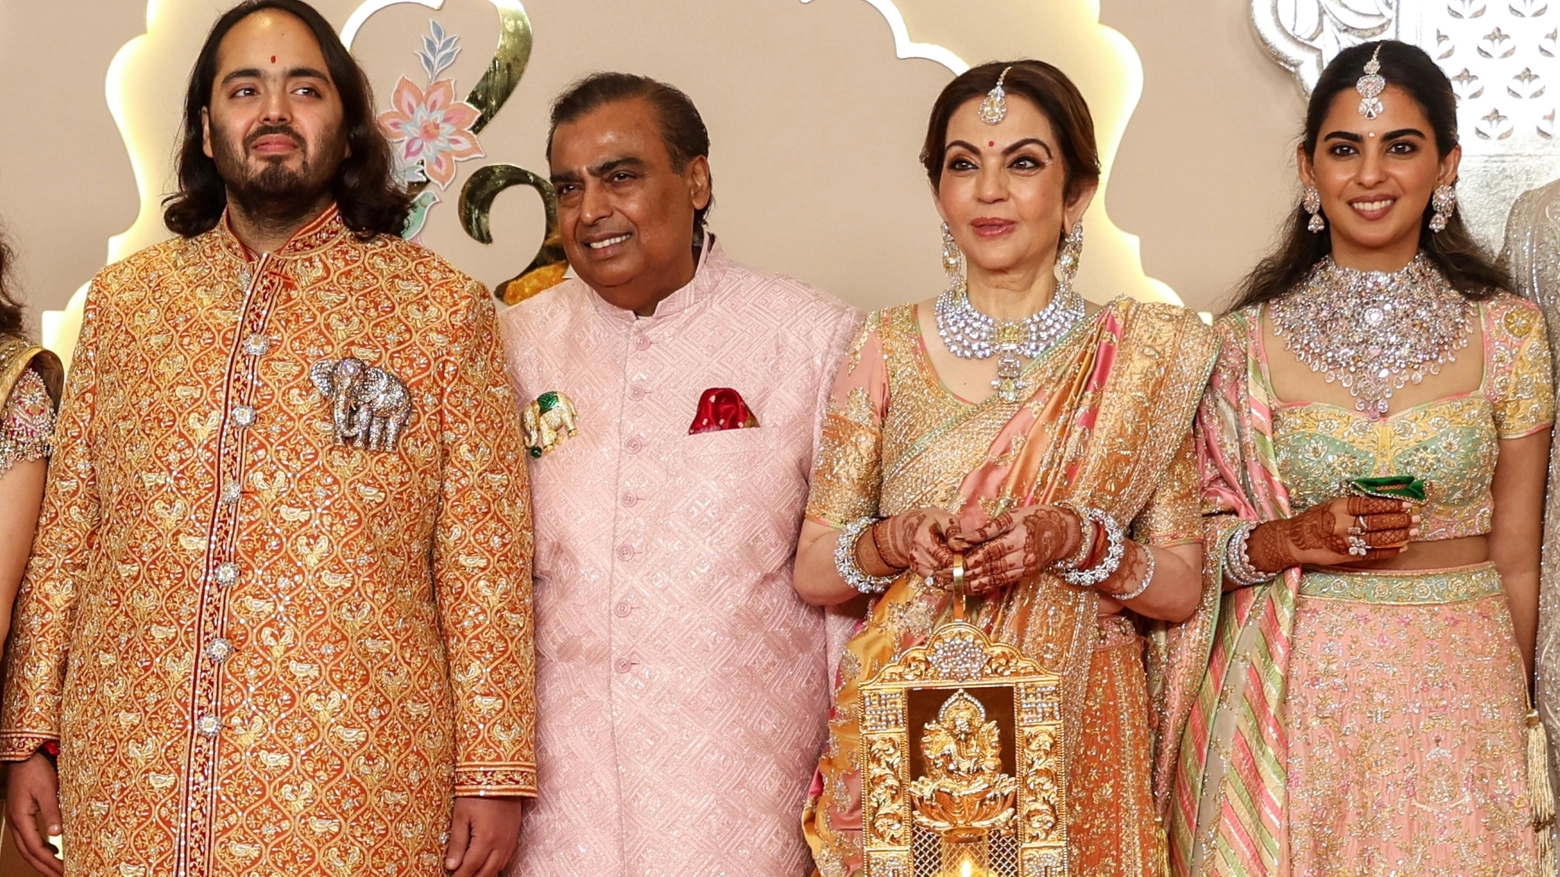 Per Anant Ambani e Radhika Merchant un matrimonio di 3 giorni tra tradizione indù e ospiti vip internazionali. L’evento ha anche un proprio direttore creativo